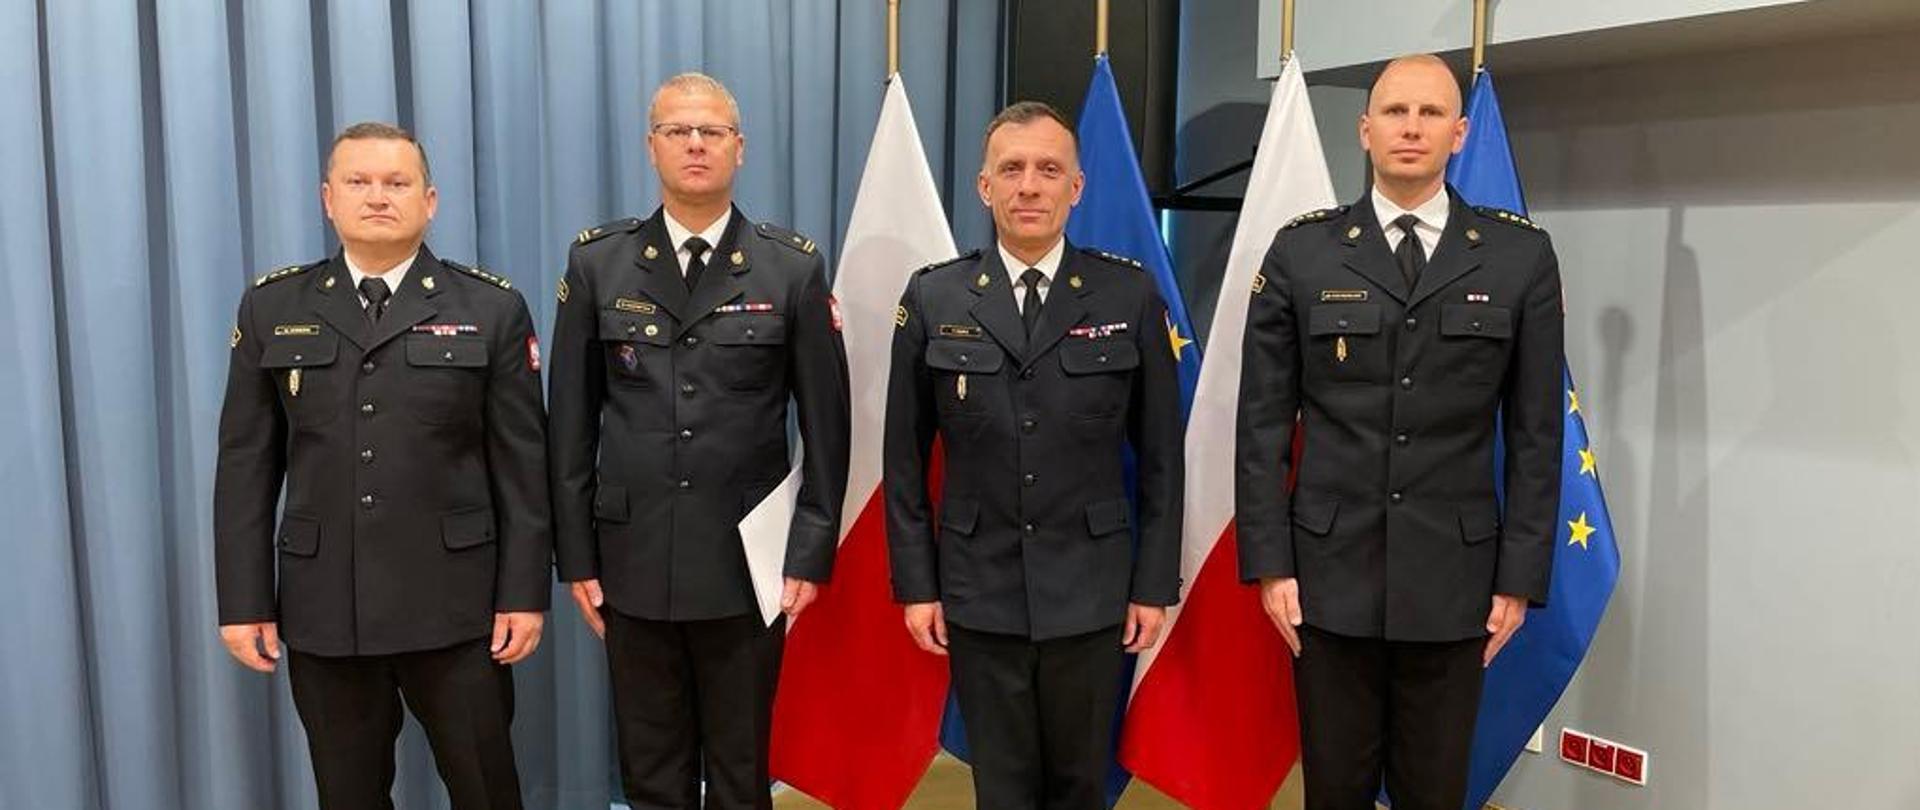 Czterech funkcjonariuszy w mundurach wyjściowych stoi w szeregu w pomieszczeniu, jeden z nich trzyma w ręku białą teczkę. Za nimi stoją flagi Polski i Uni Europejskiej. 